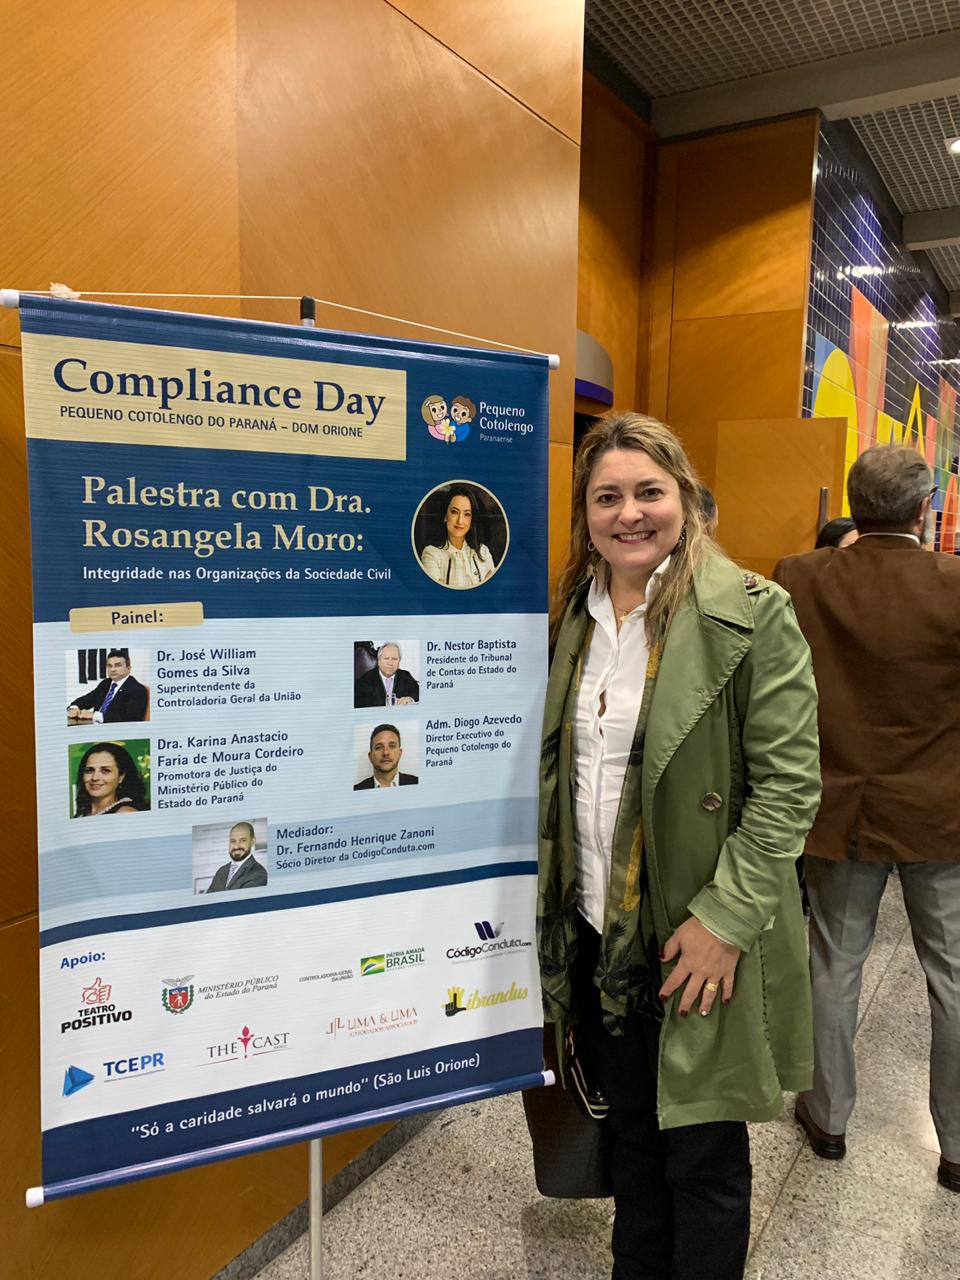 Compliance Day – Pequeno Cotolengo do Paraná – Dom Orione